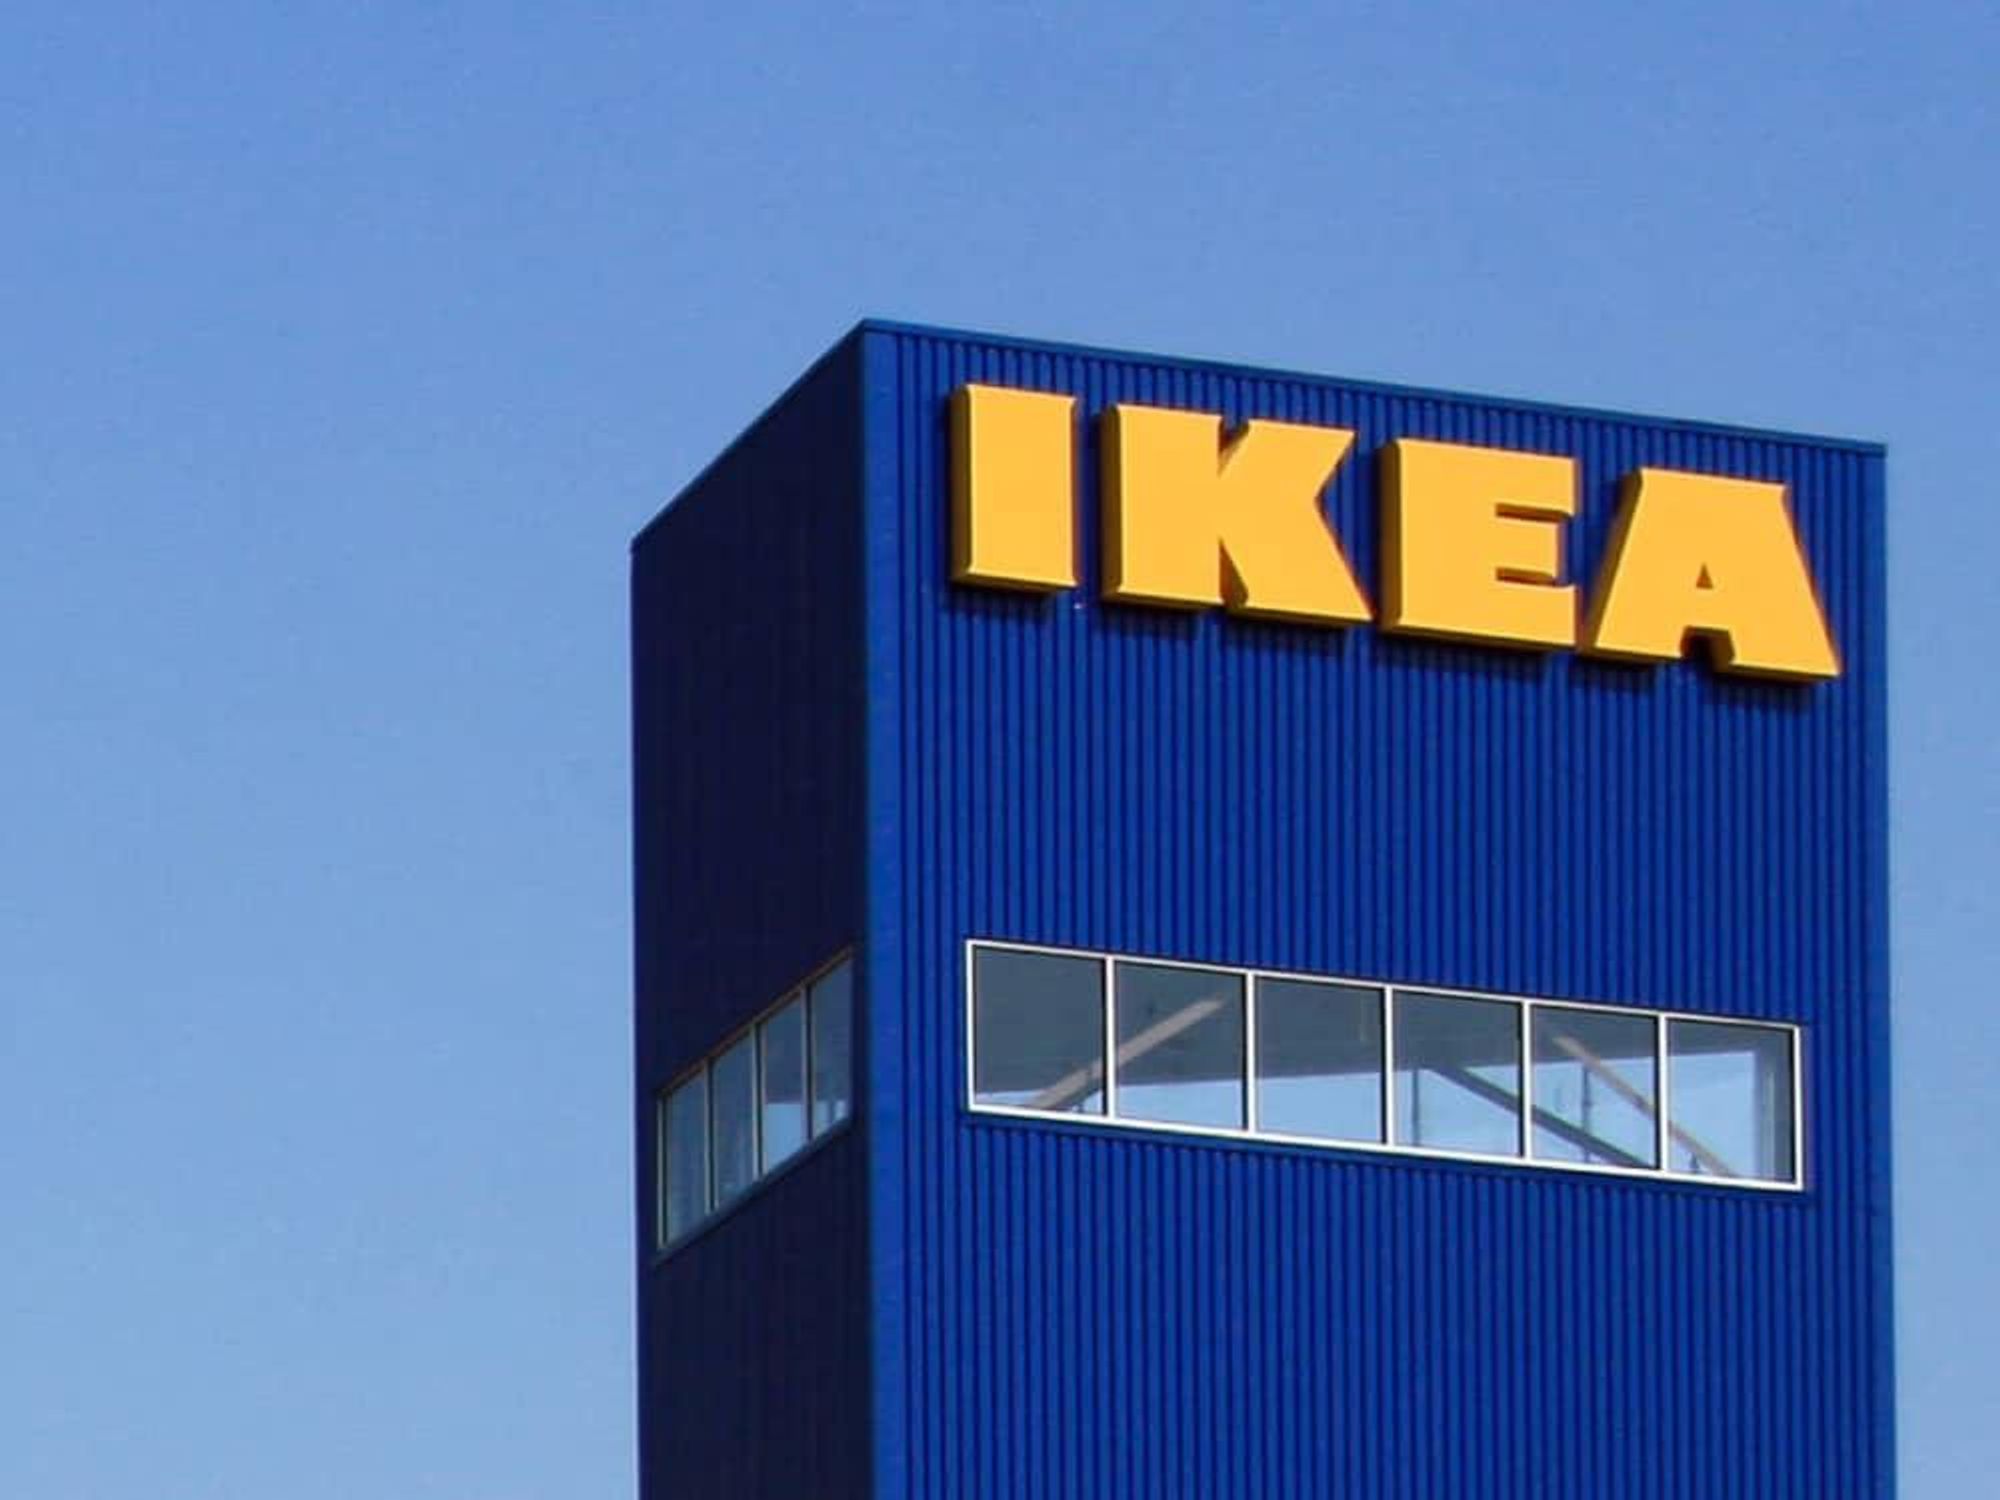 IKEA Houston tower sign